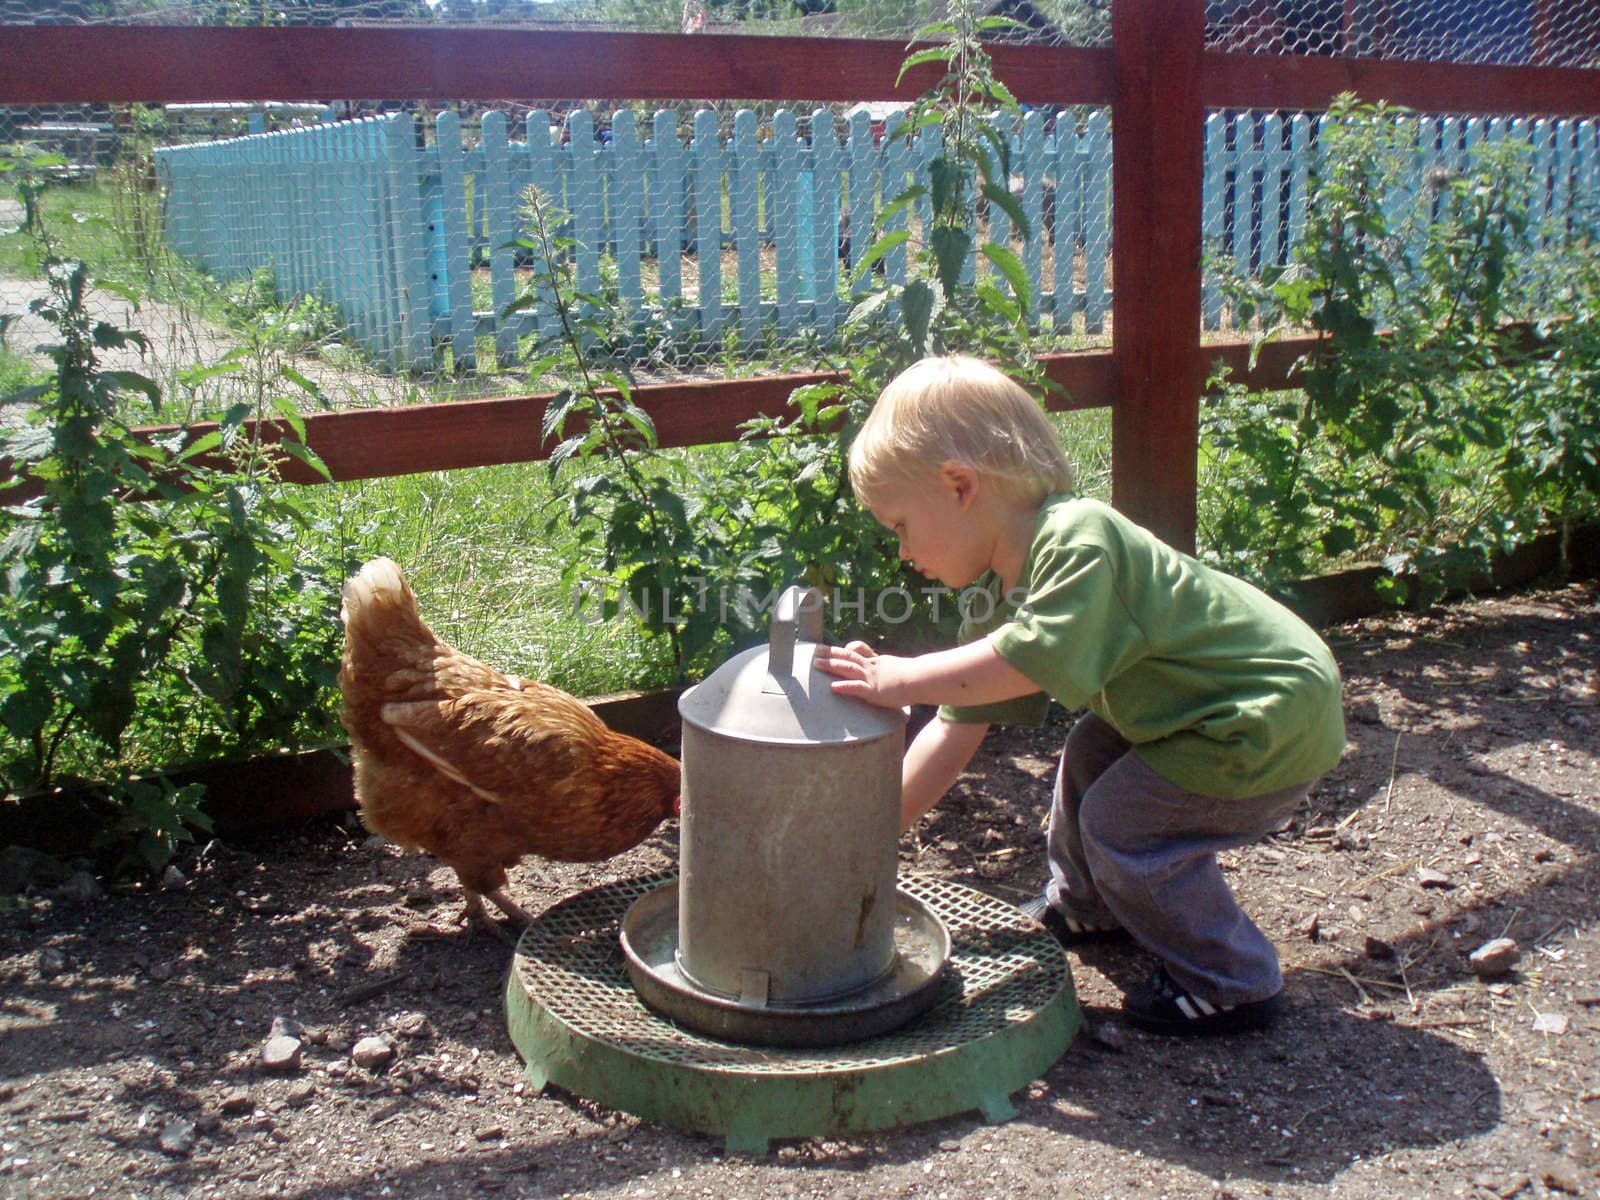 boy feeding chicken by lulu2626